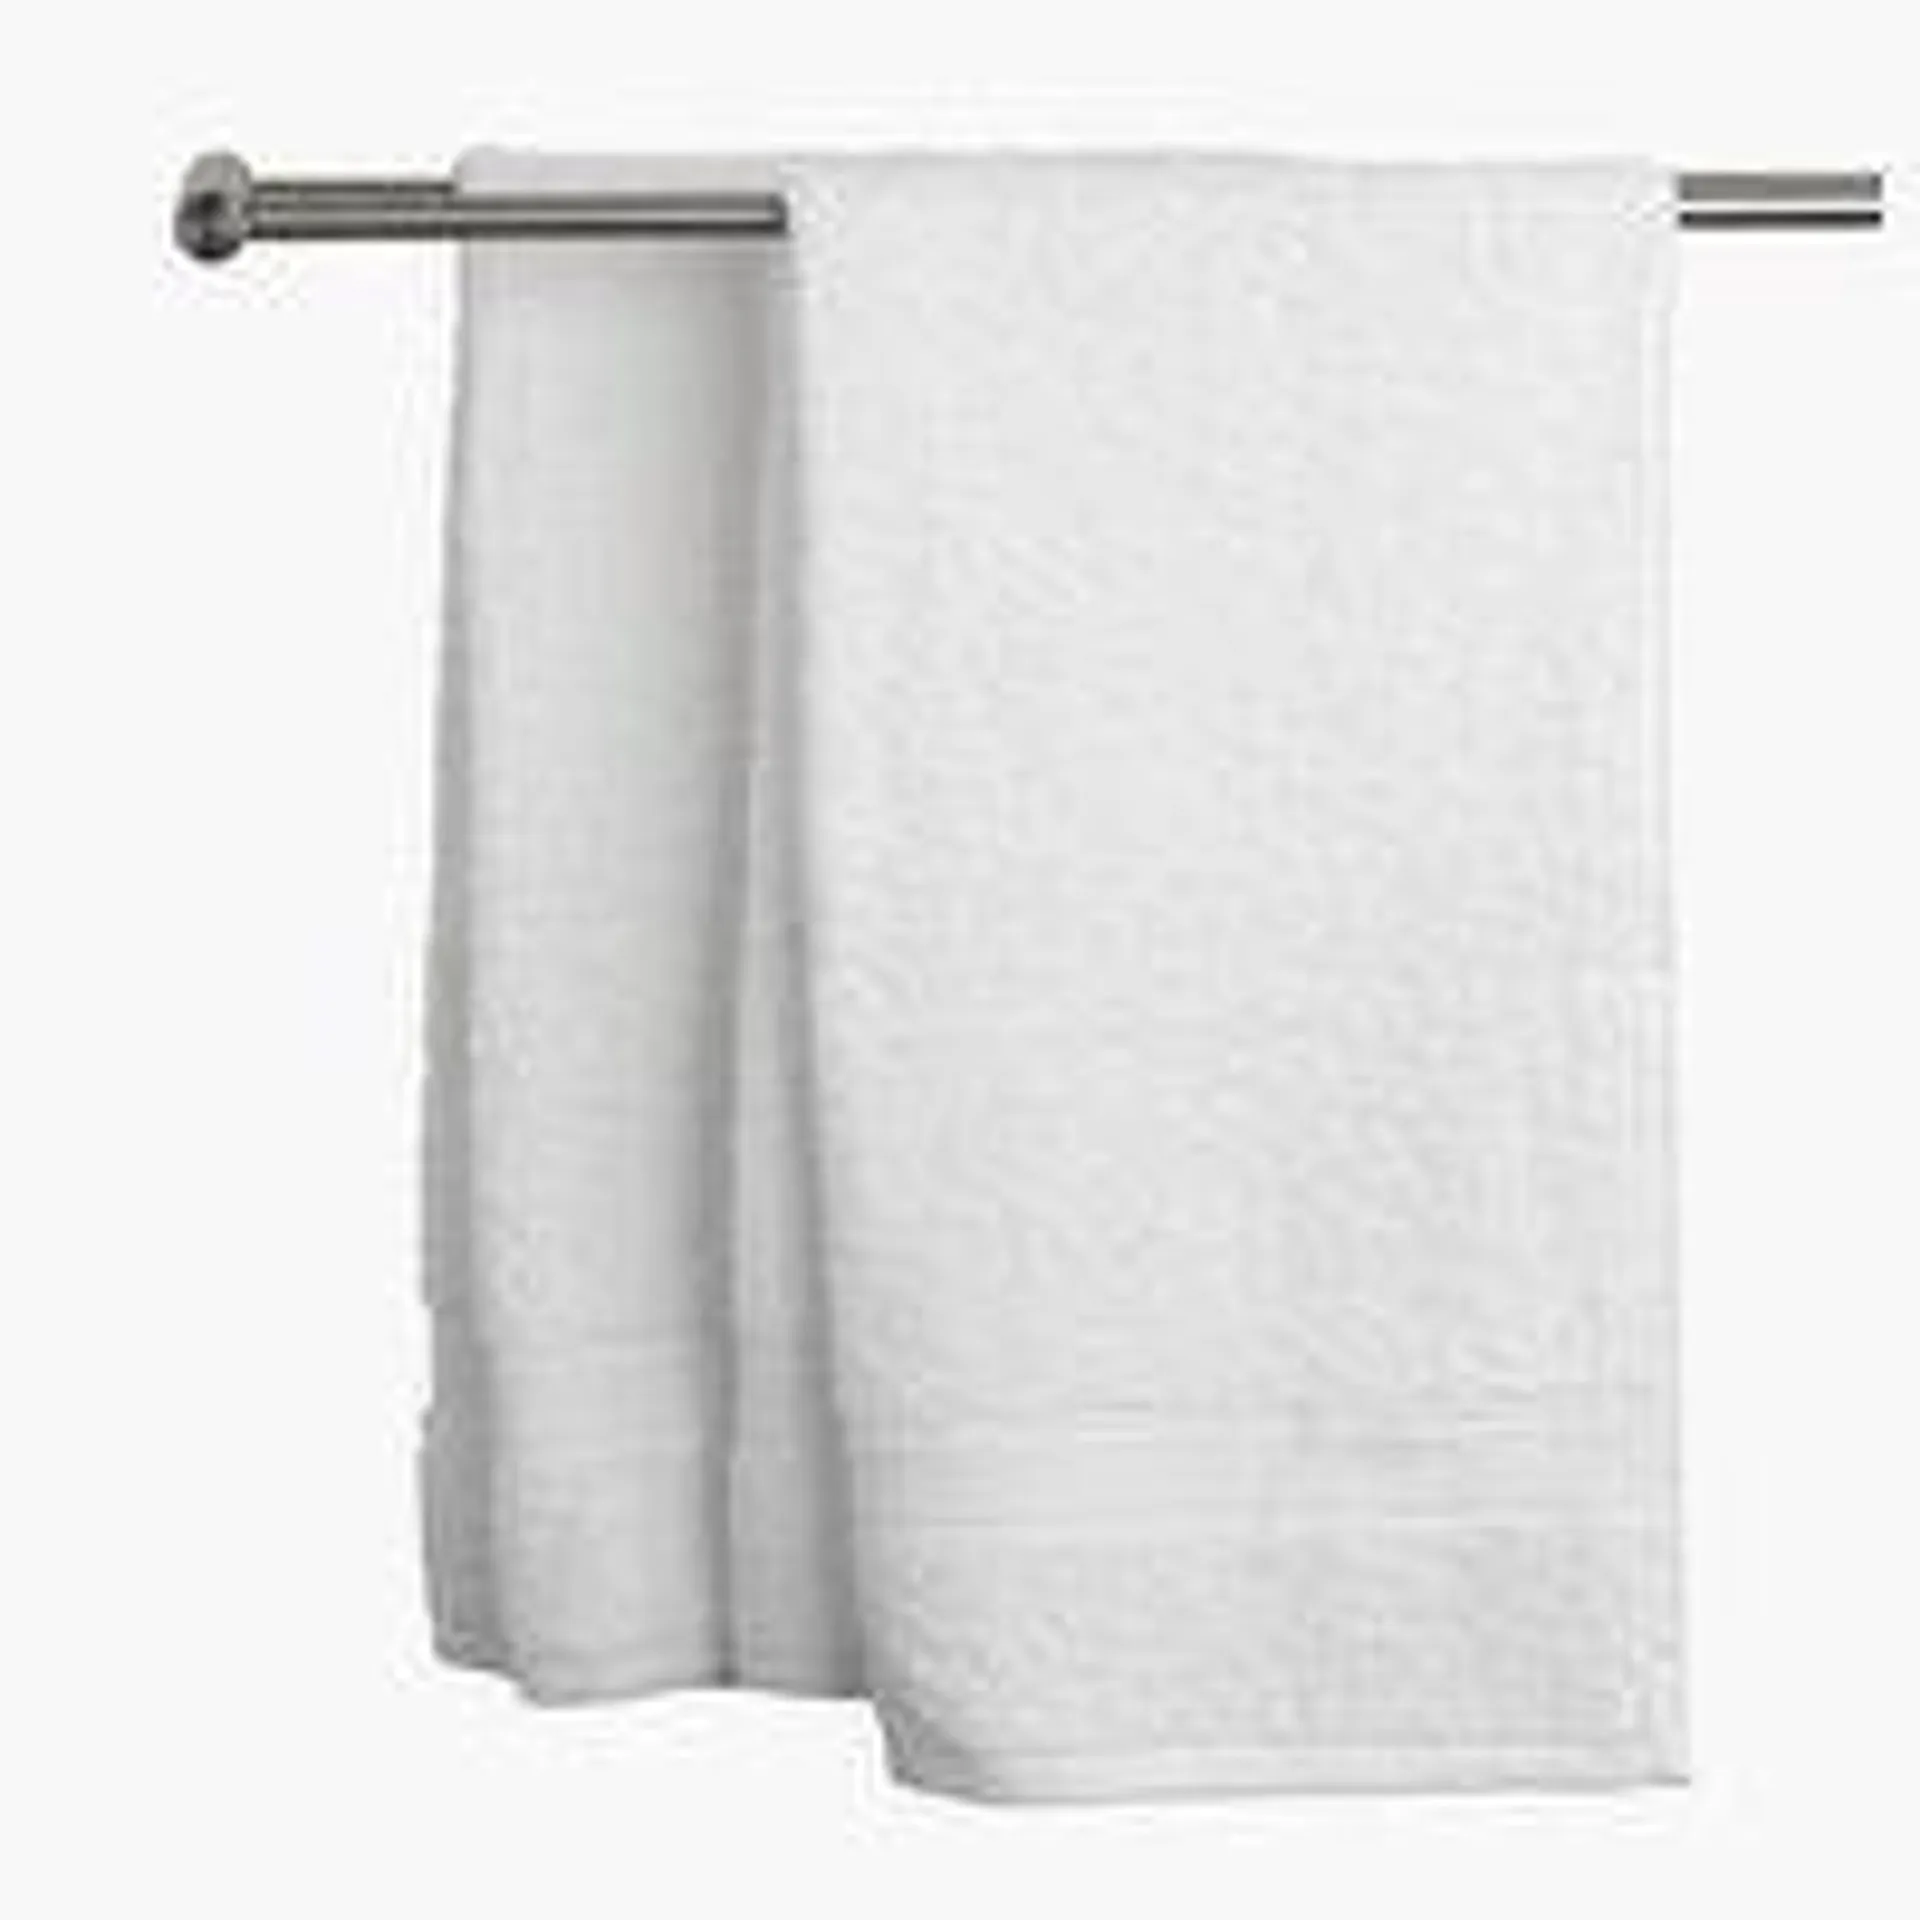 Ręcznik UPPSALA 50x90 biały